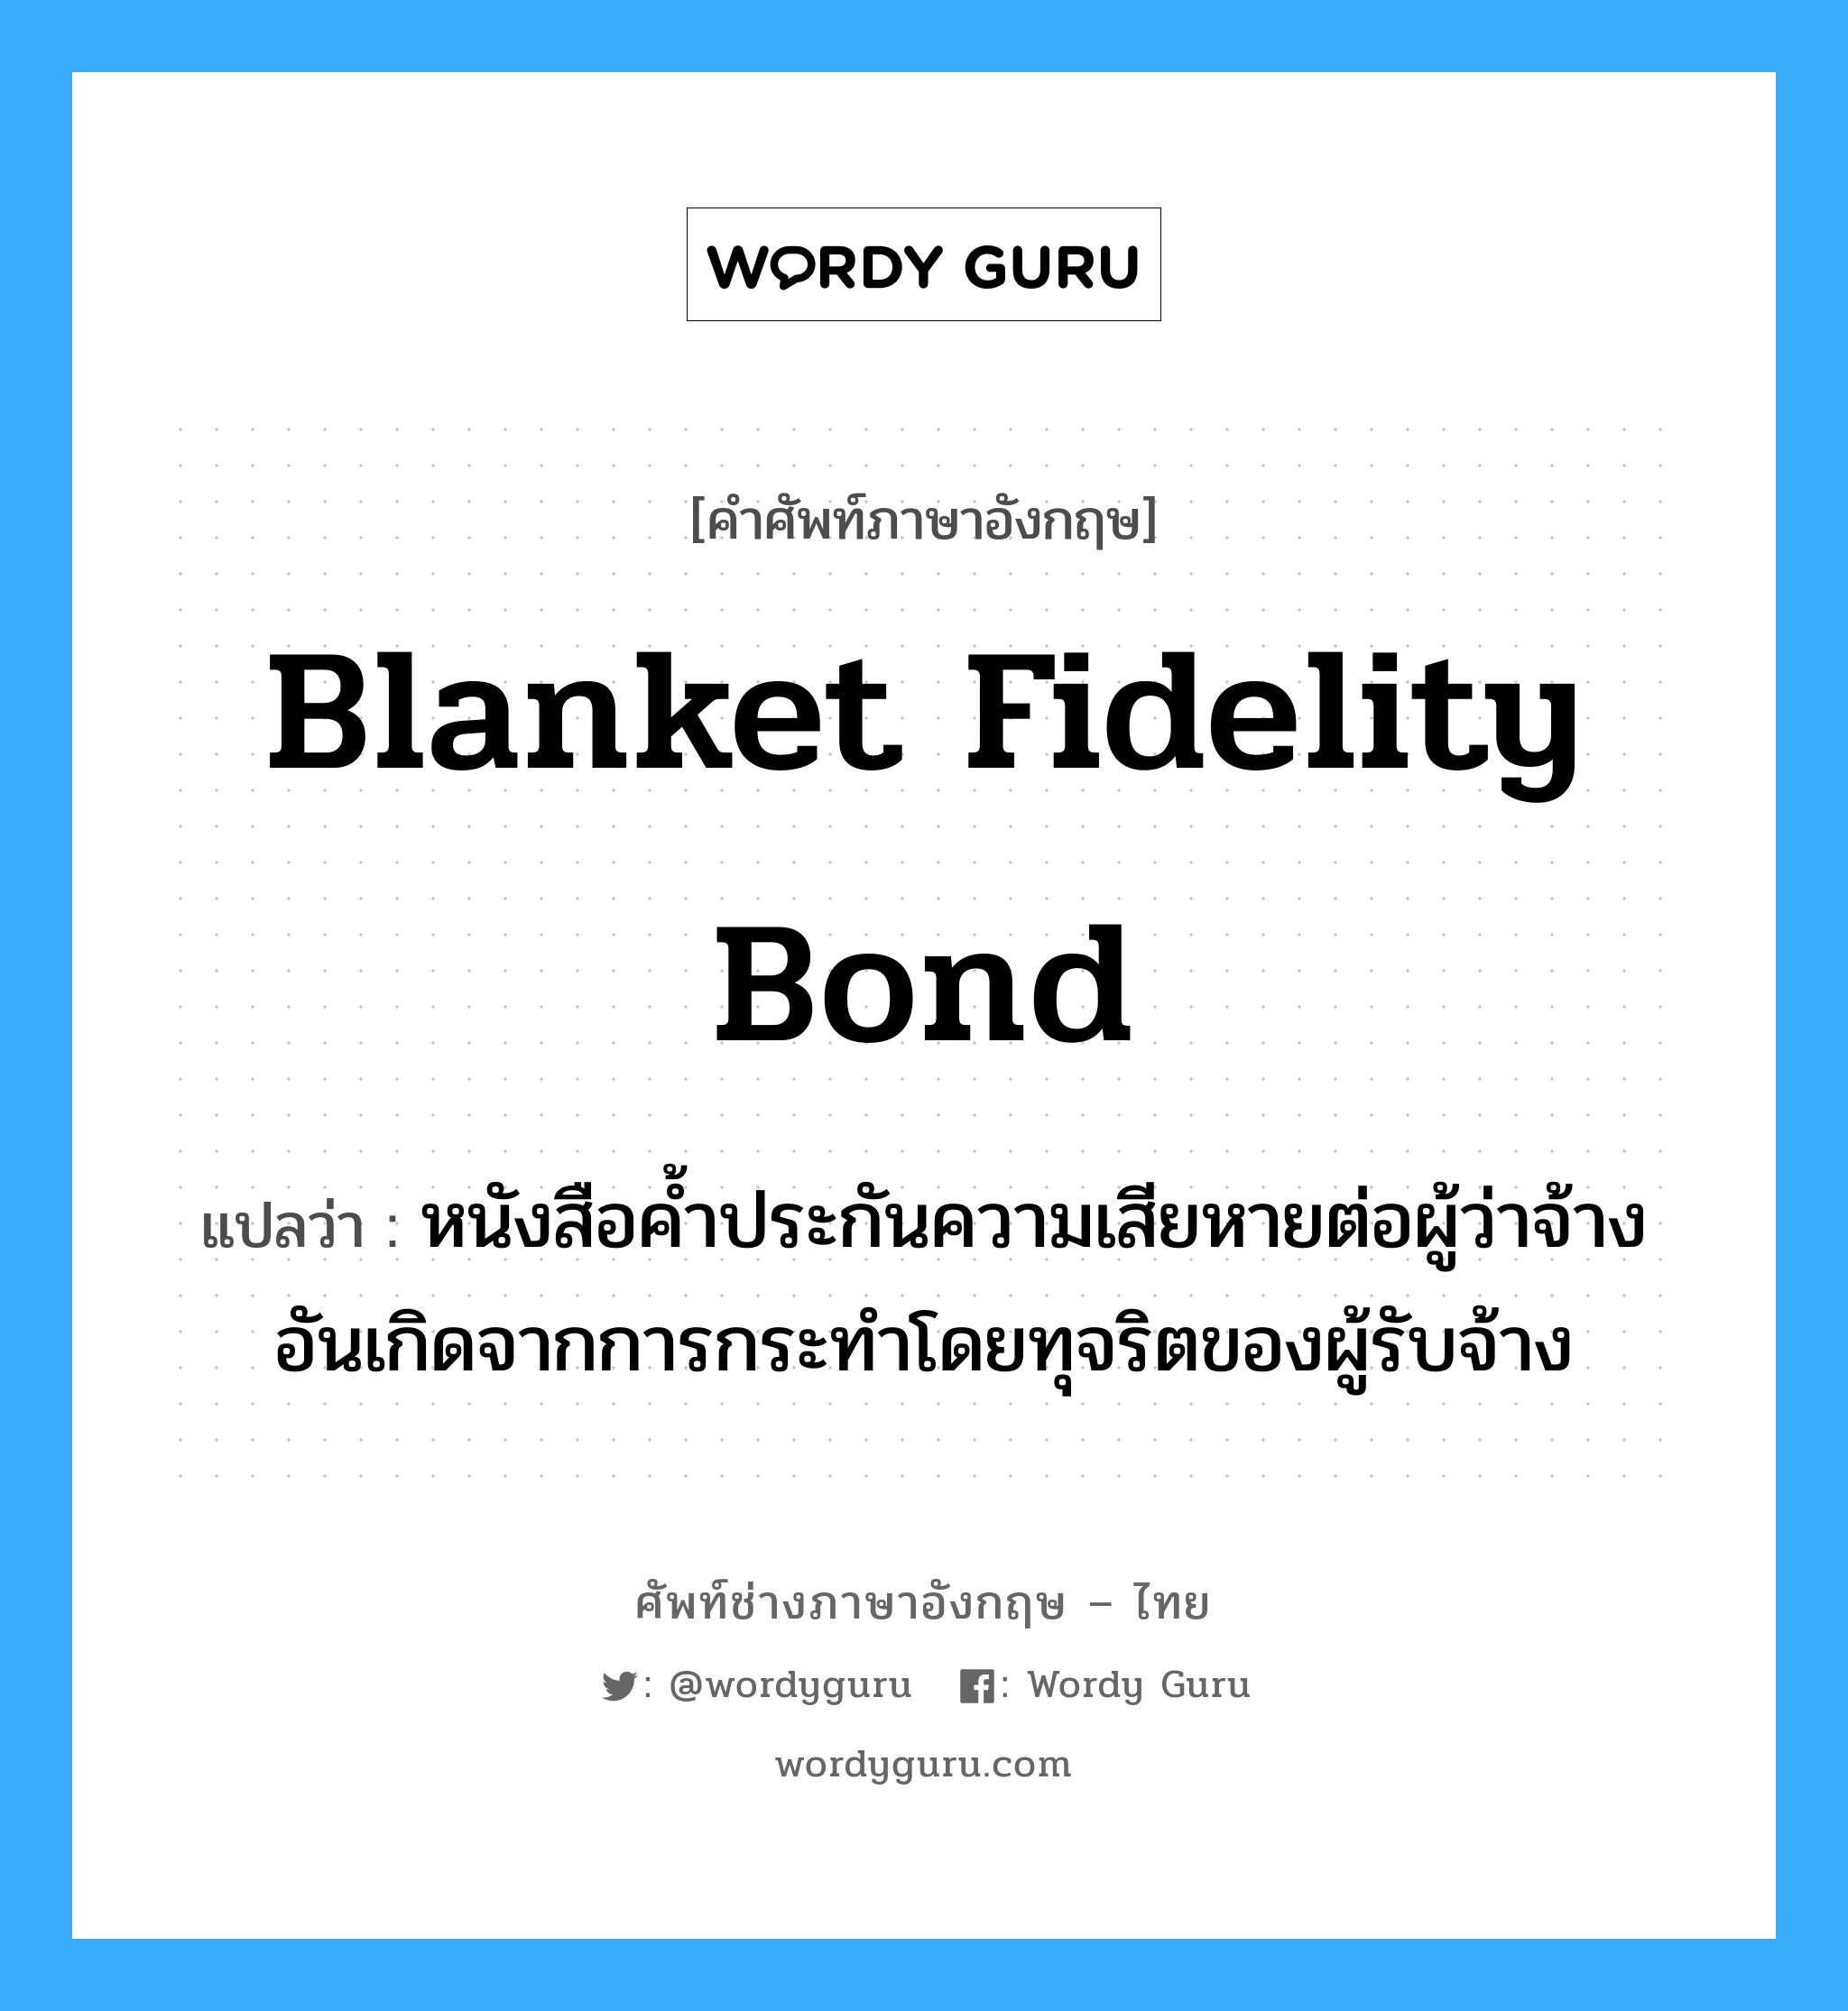 Blanket Fidelity Bond แปลว่า?, คำศัพท์ช่างภาษาอังกฤษ - ไทย Blanket Fidelity Bond คำศัพท์ภาษาอังกฤษ Blanket Fidelity Bond แปลว่า หนังสือค้ำประกันความเสียหายต่อผู้ว่าจ้าง อันเกิดจากการกระทำโดยทุจริตของผู้รับจ้าง